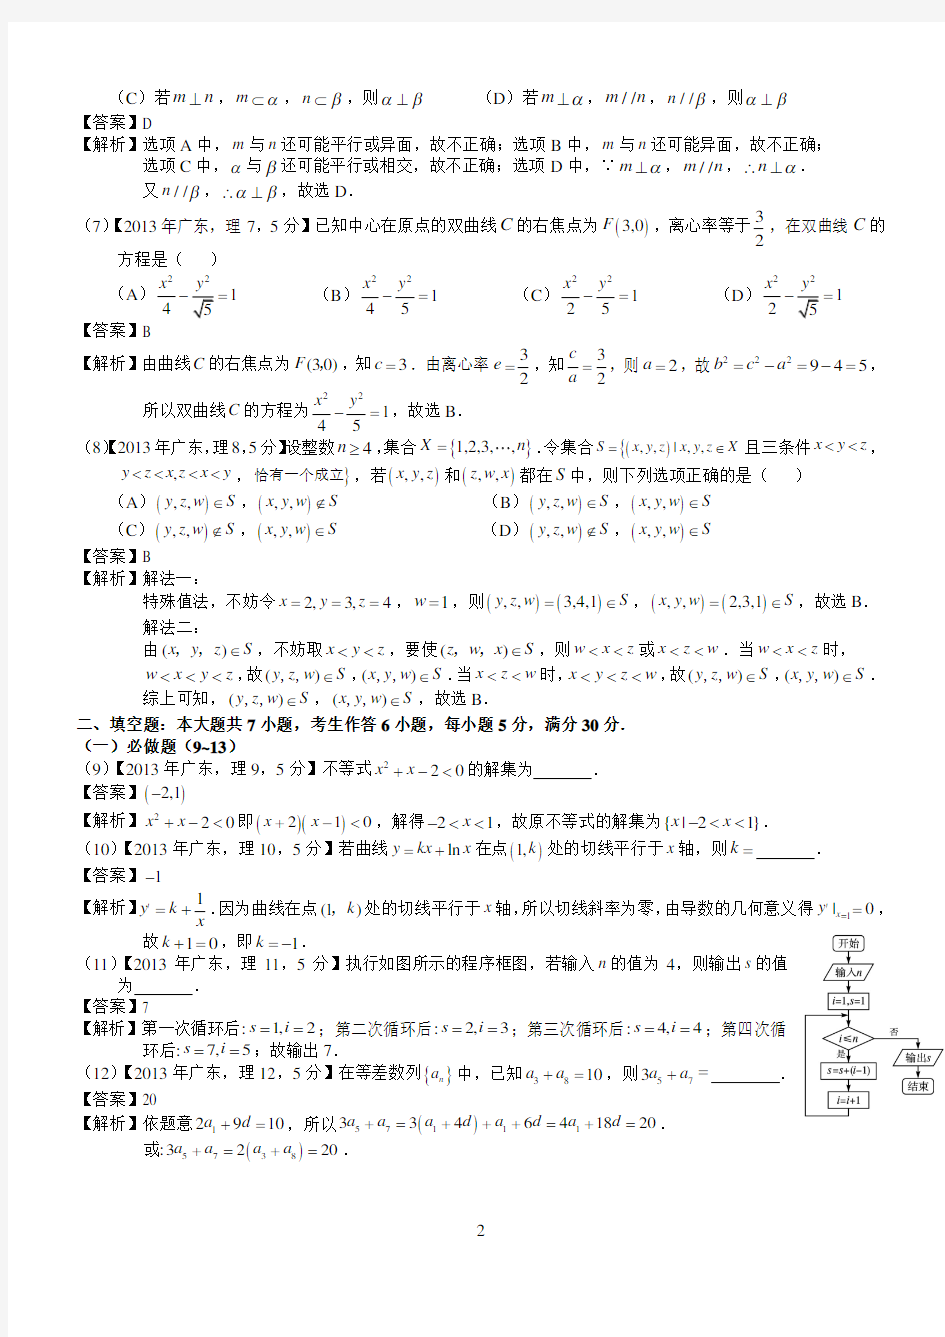 2013年高考广东理科数学试题及答案(word解析版)